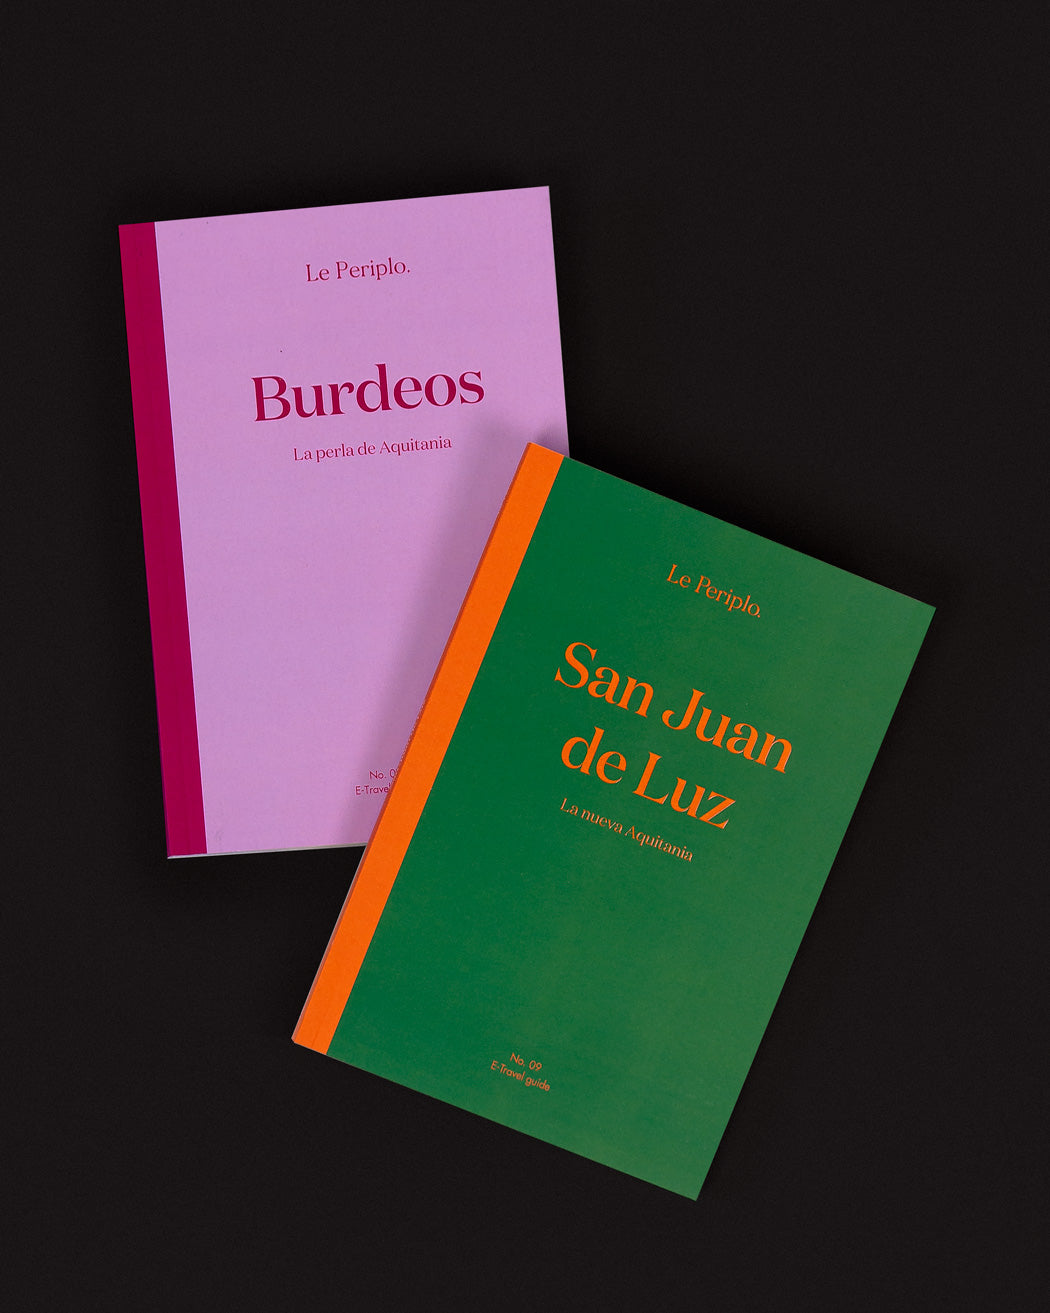 Le France Pack I - Bordeaux and Saint-Jean-de-Luz (printed) Spanish version